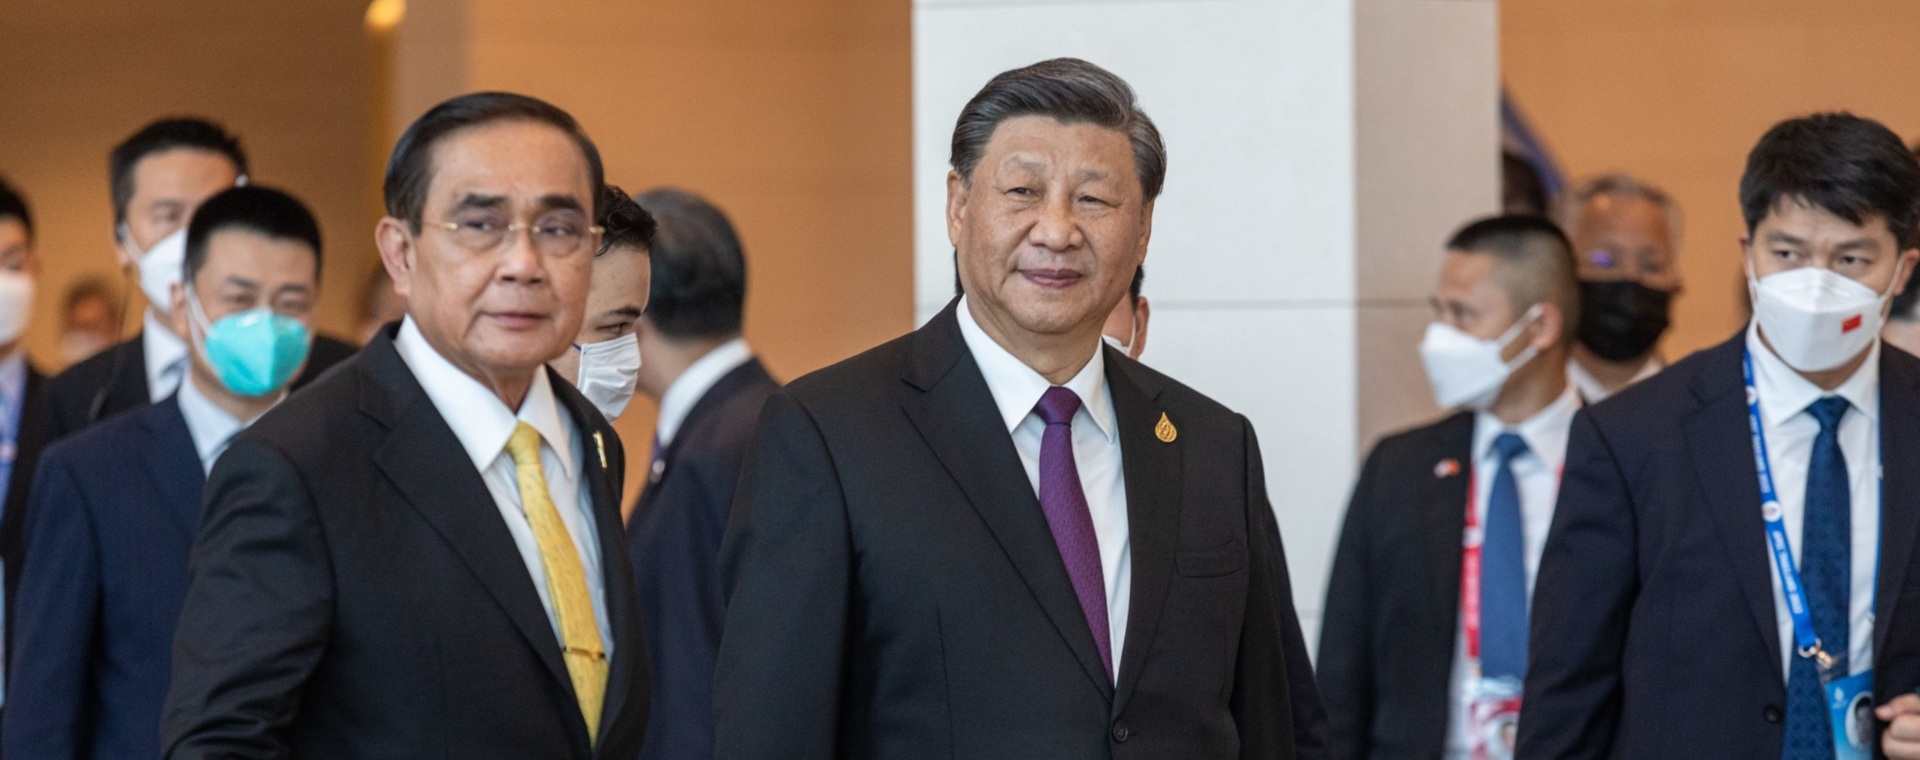 Prayuth Chan-Ocha, Perdana Menteri Thailand, kiri, dan Xi Jinping, Presiden China, tiba di KTT Kerja Sama Ekonomi Asia-Pasifik (APEC) di Bangkok, Thailand, pada Jumat (18/11/2022). Bloomberg/Andre Malerba